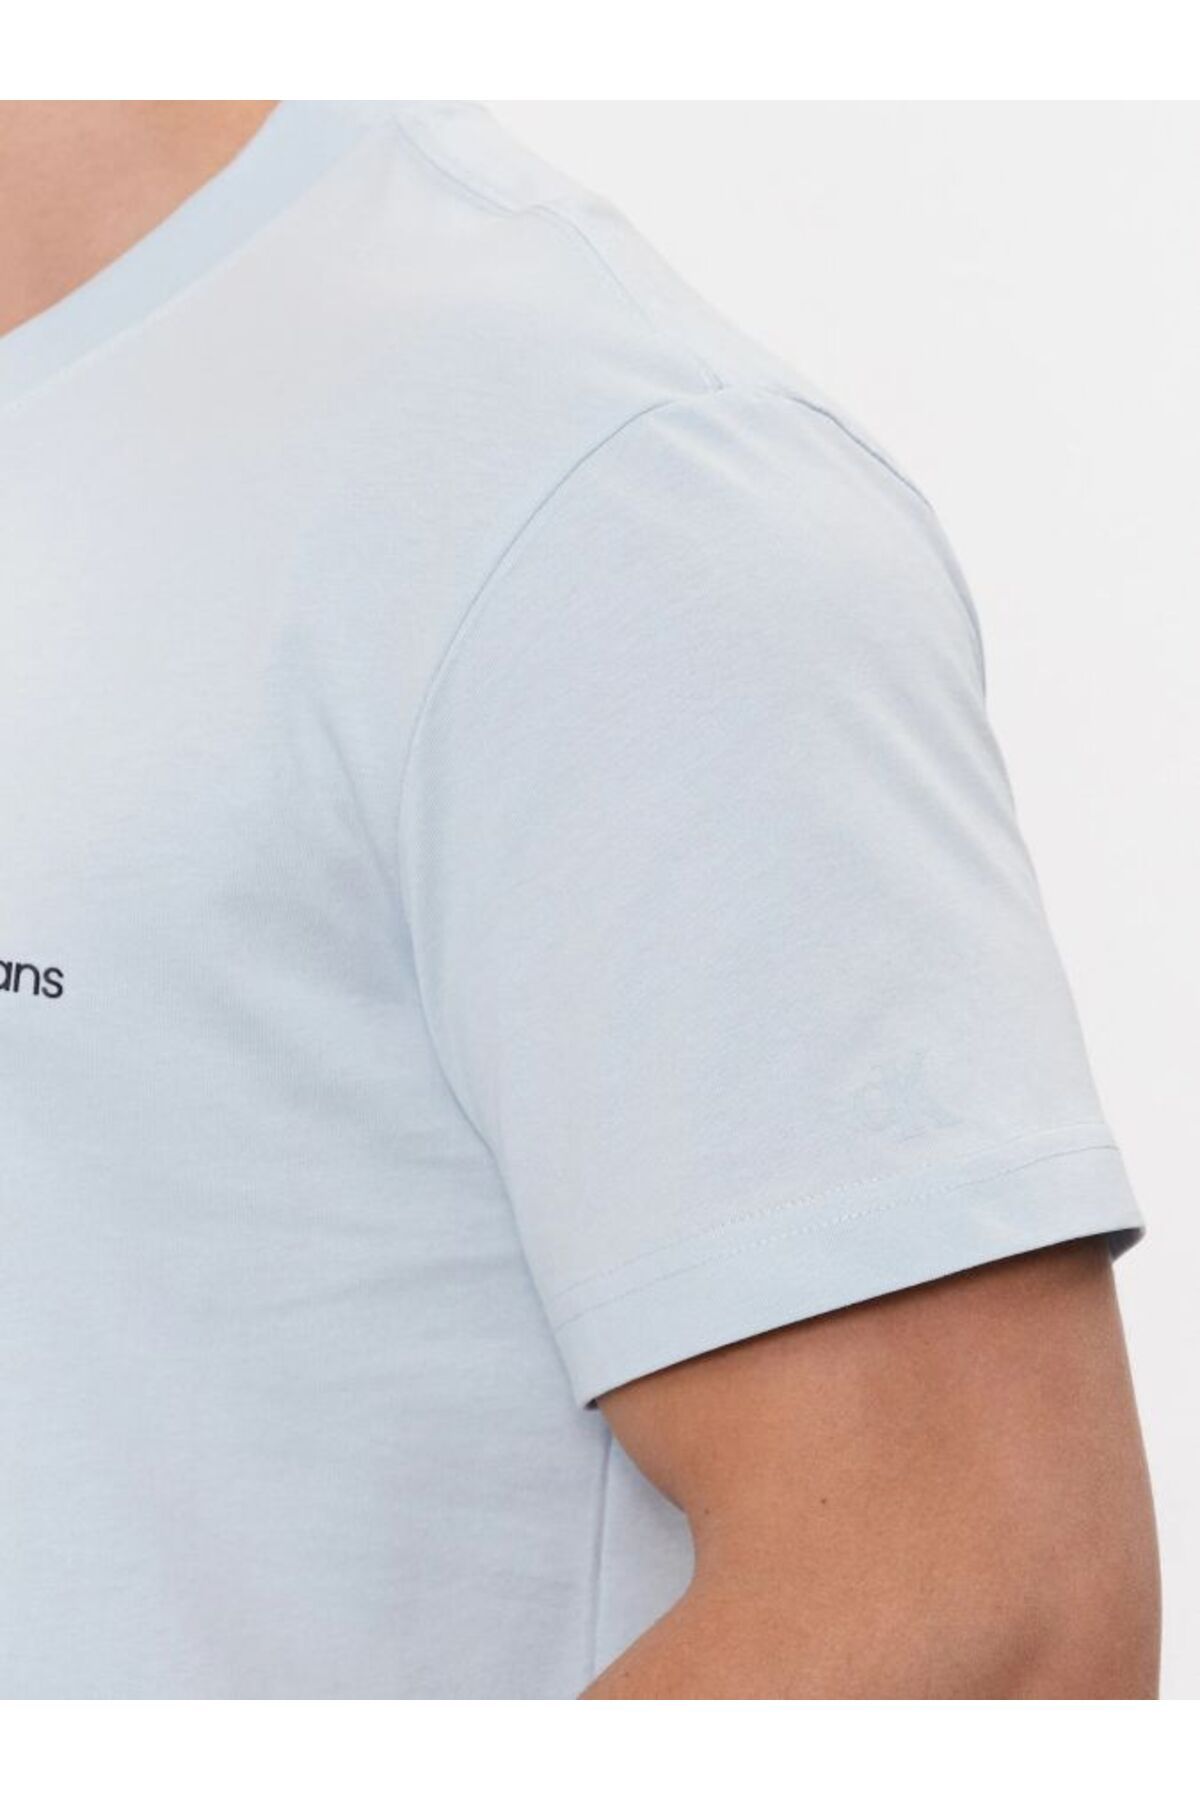 Calvin Klein Calvin Klein پیراهن تی شرت مردانه با گردن دوچرخه ای و طرح مربعات اسپری